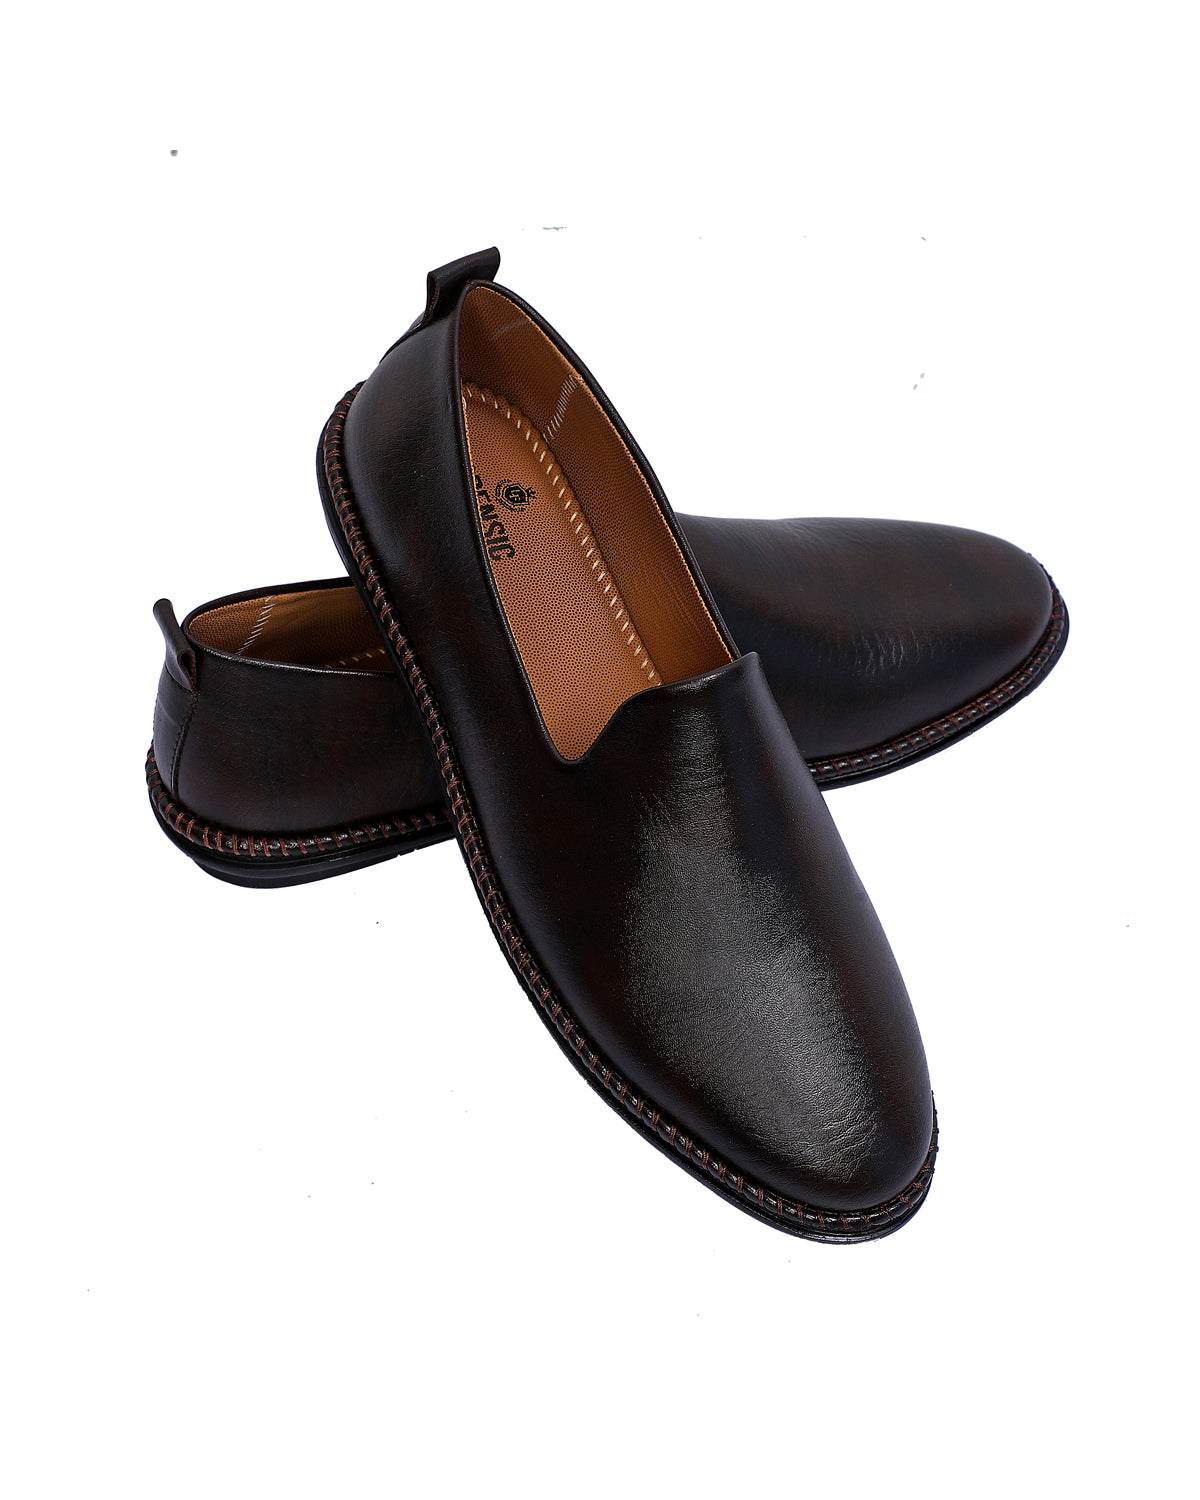 Loafer Slip-on Shoes - Dark Brown